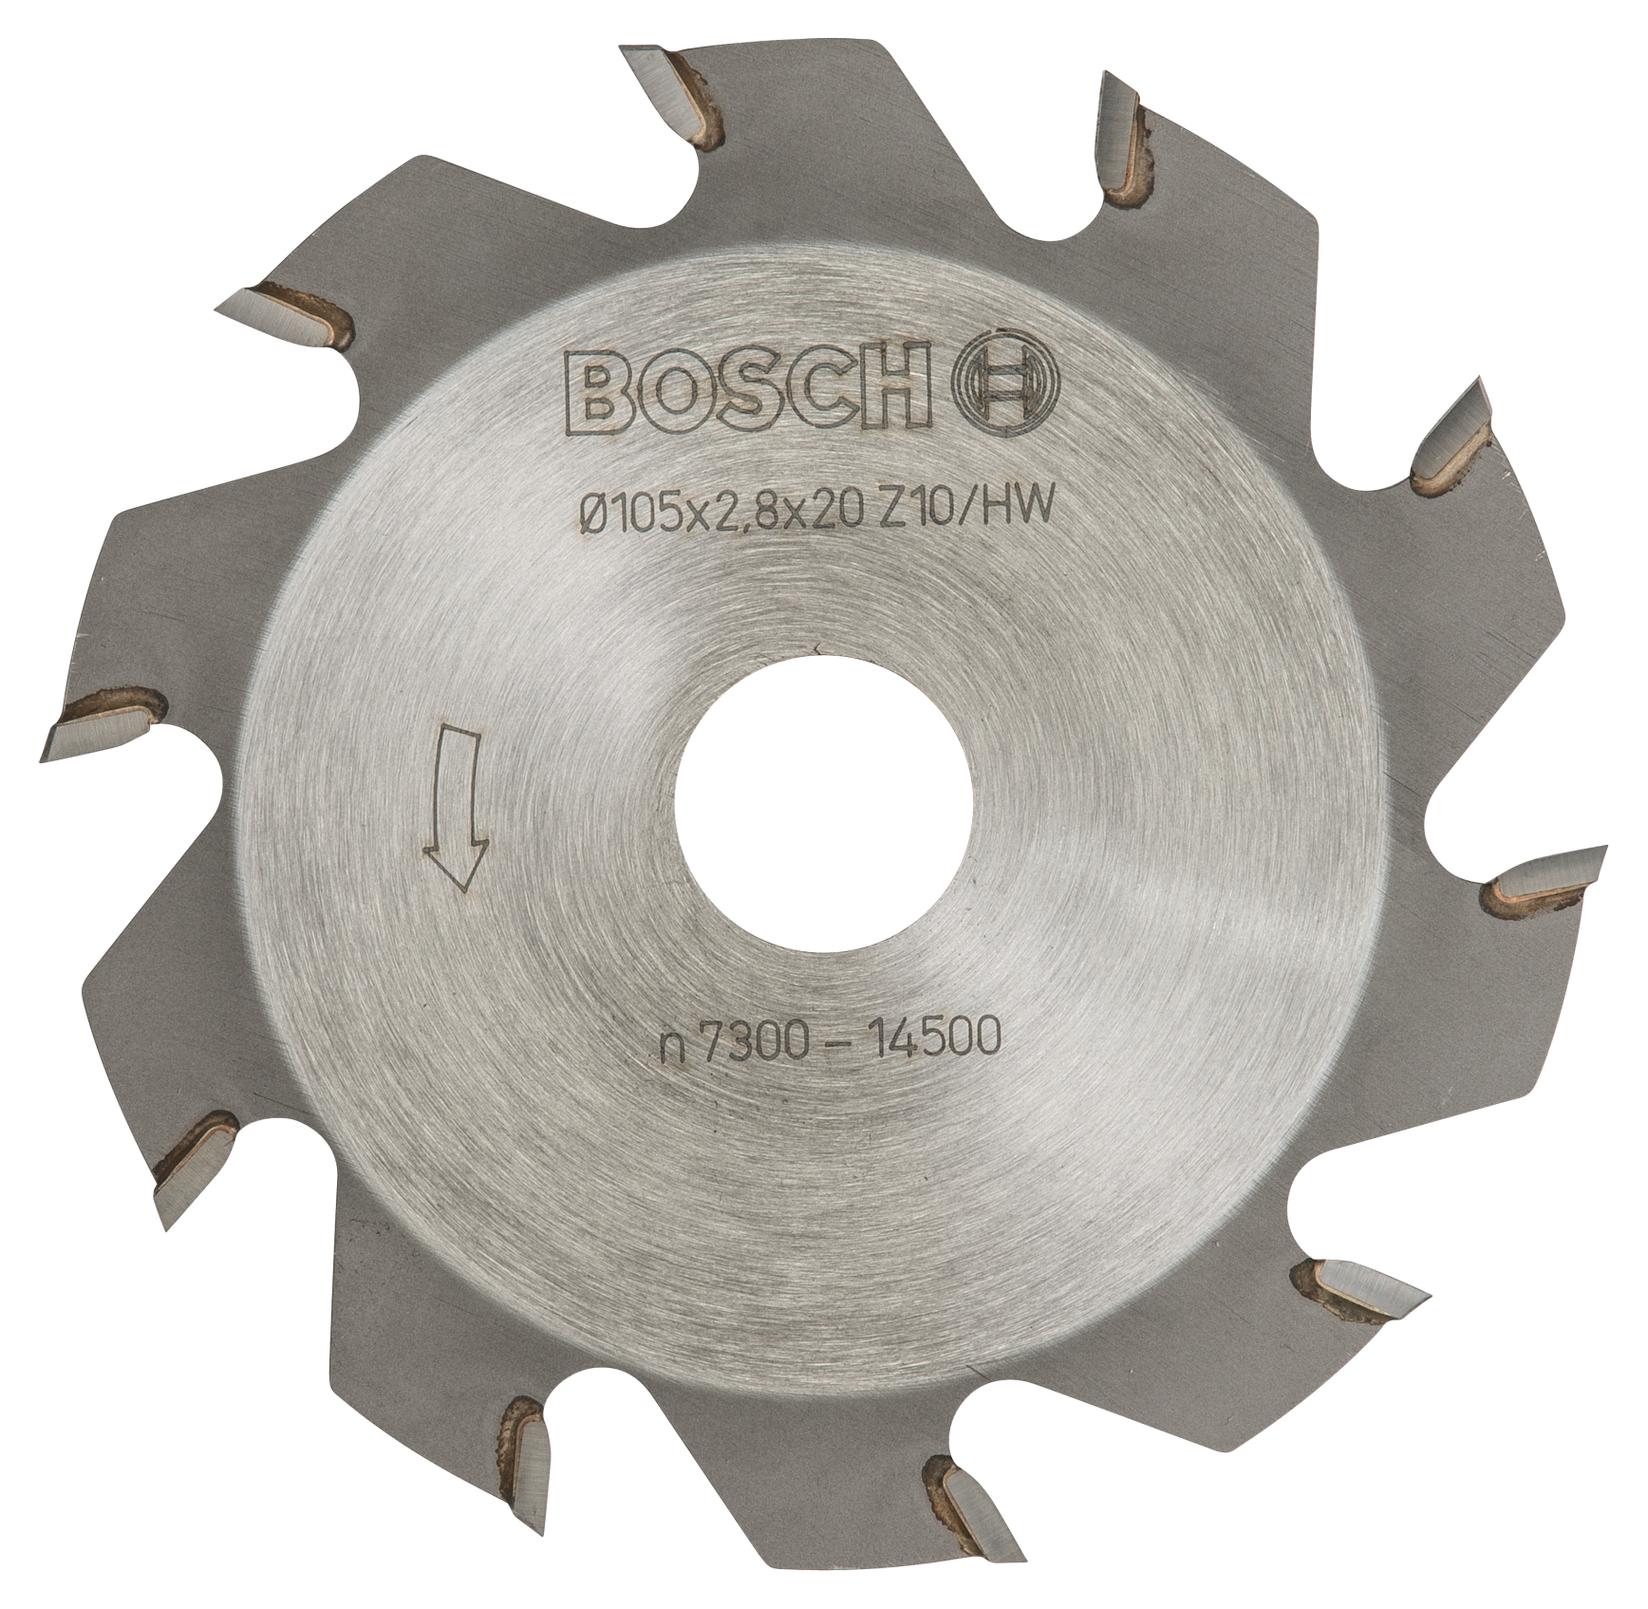 Selected image for Bosch Pločasta glodalo 10, 20 mm, 2,8 mm 3608641001